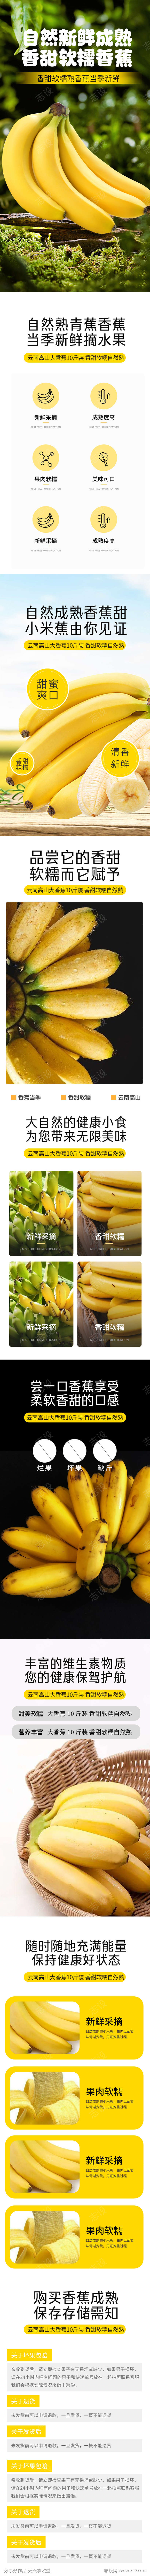 生鲜水果香蕉蔬菜海报